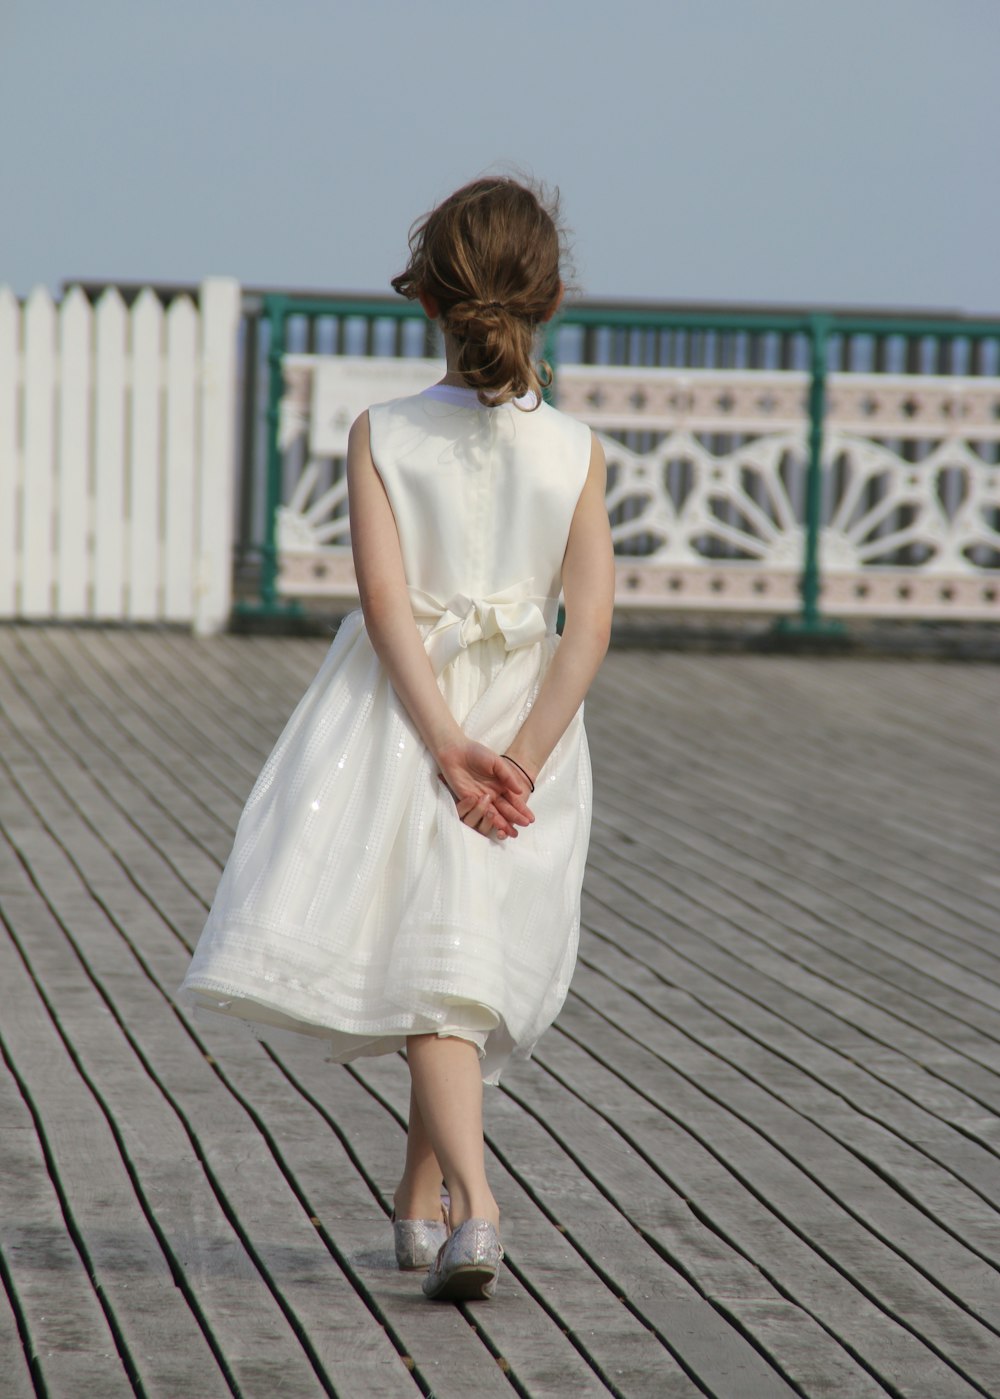 Frau in weißem ärmellosem Kleid tagsüber auf grauem Holzboden stehend